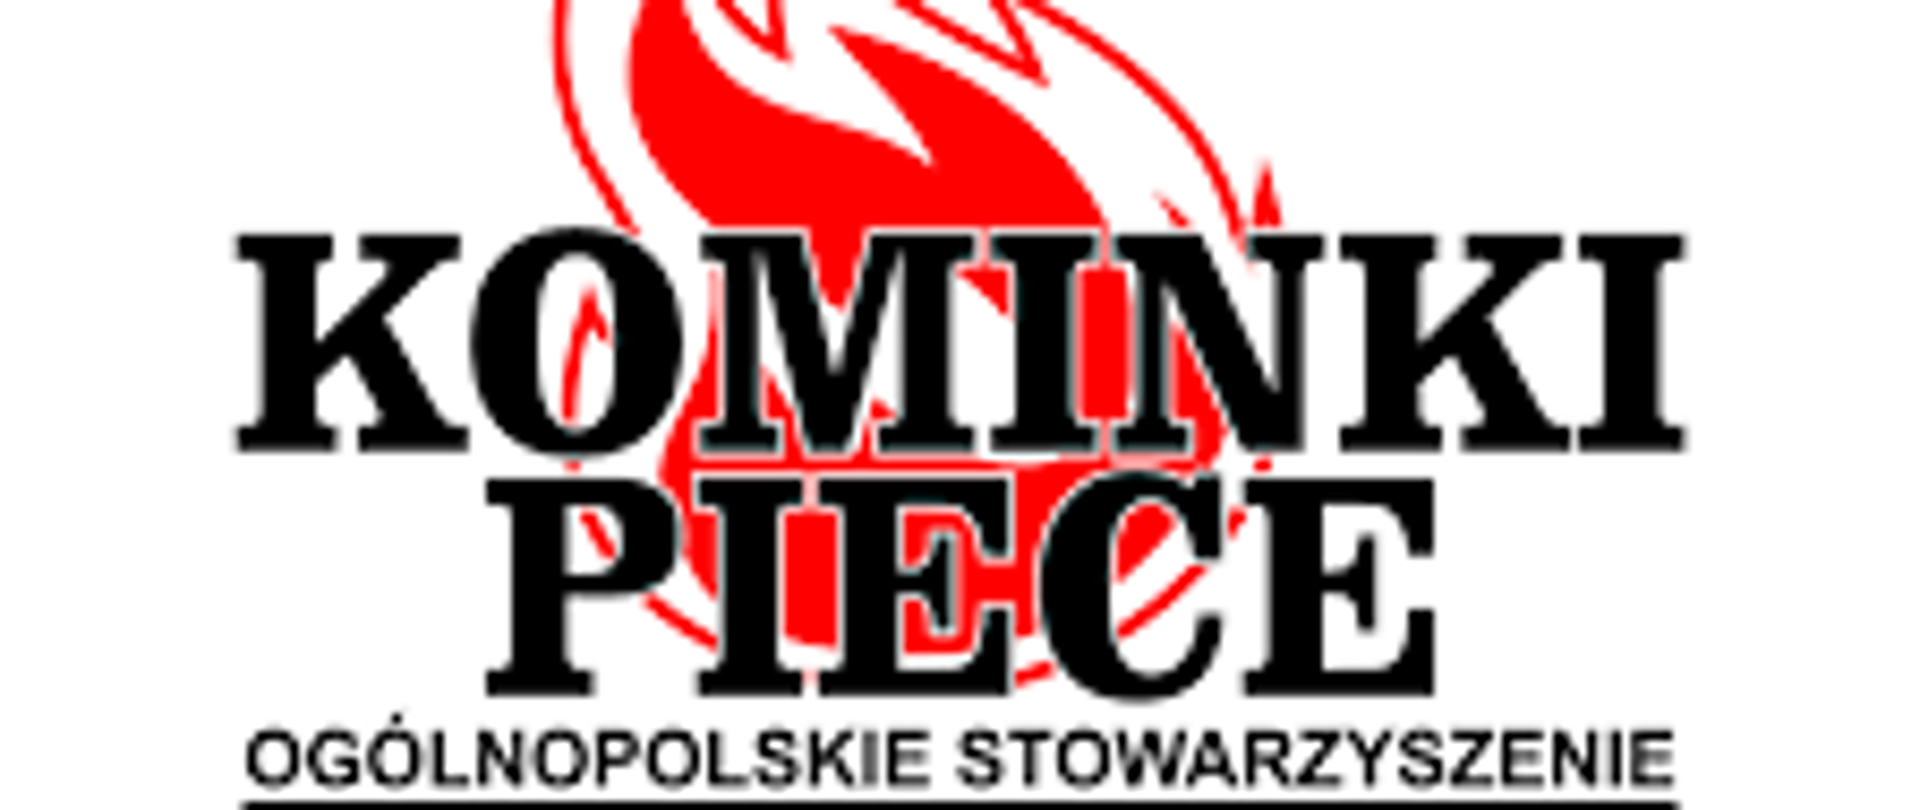 grafika przedstawia na białym tle ikonę płomienia , na którym znajduje się czarny napis: KOMINKI I PIECE Ogólnopolskie Stowarzyszenie 